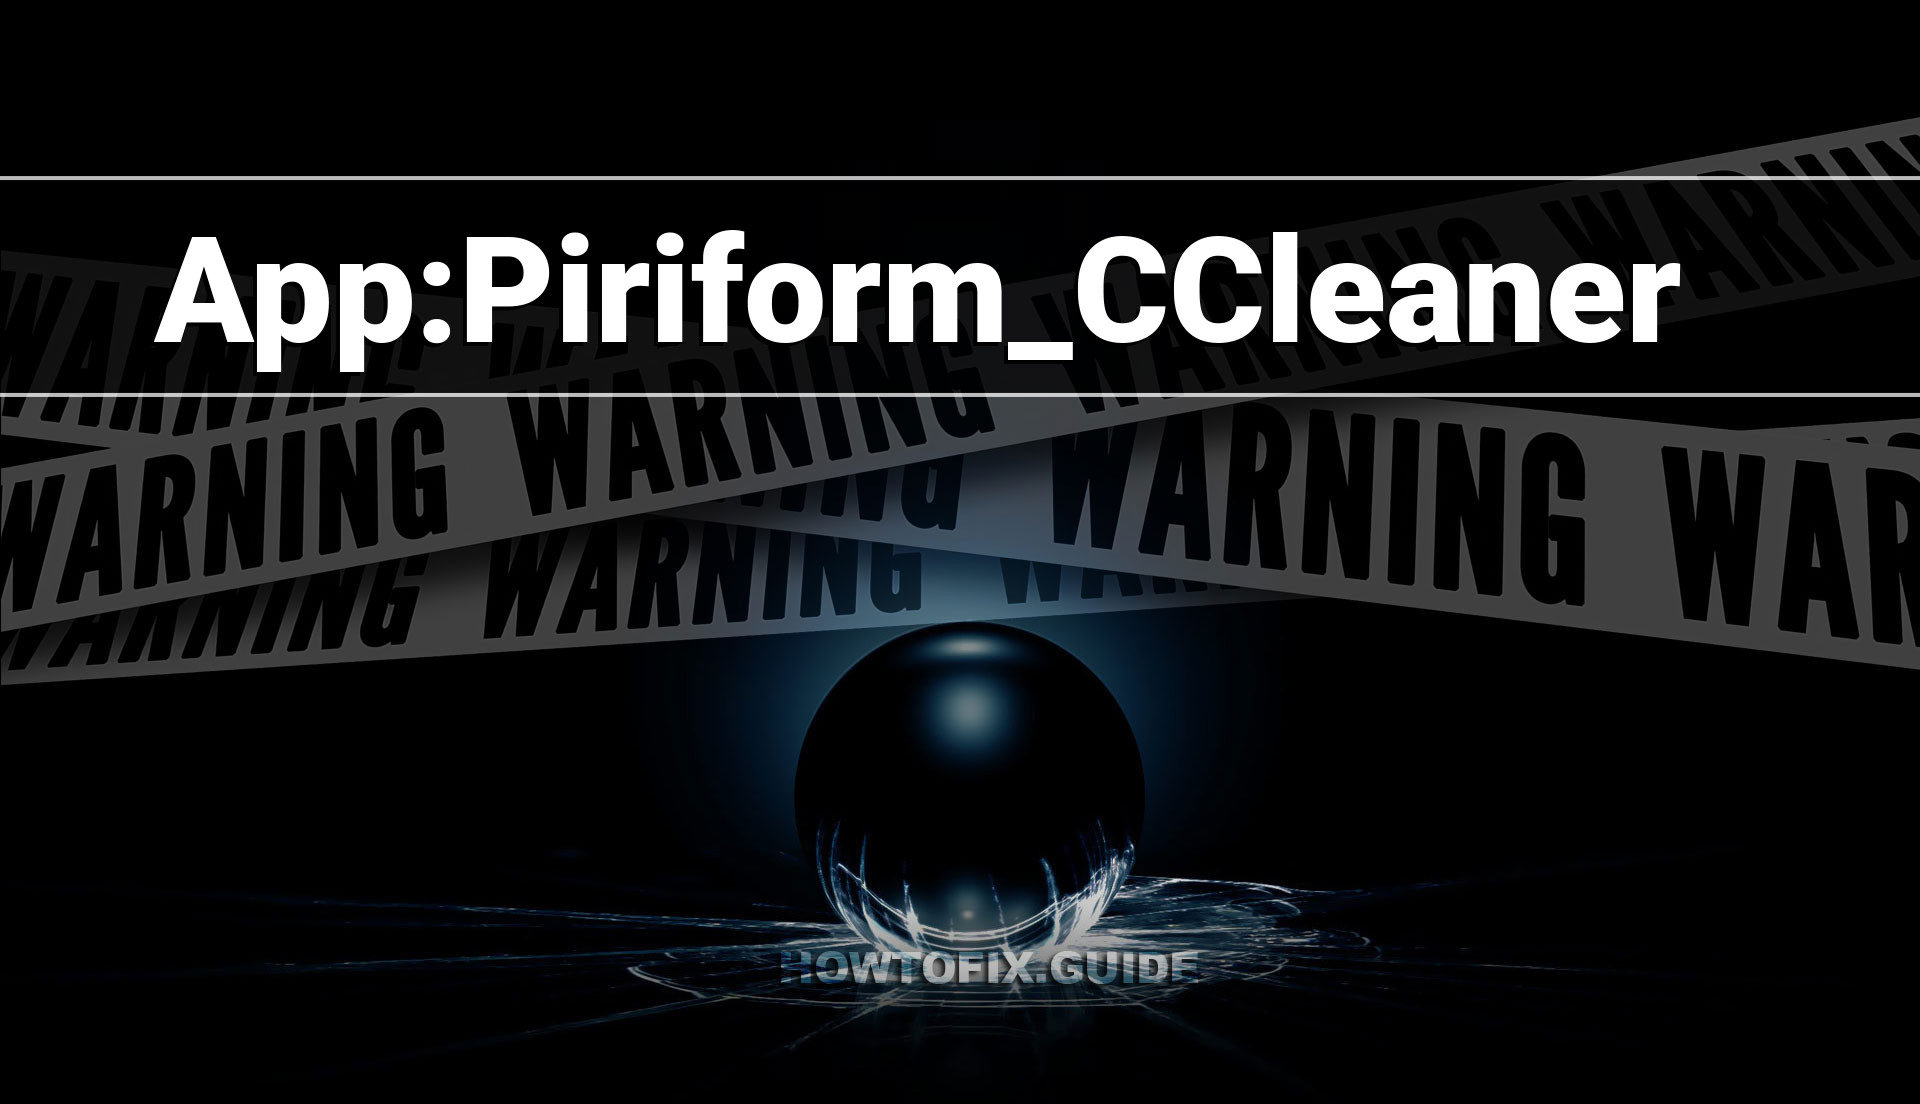 ccleaner piriform virus